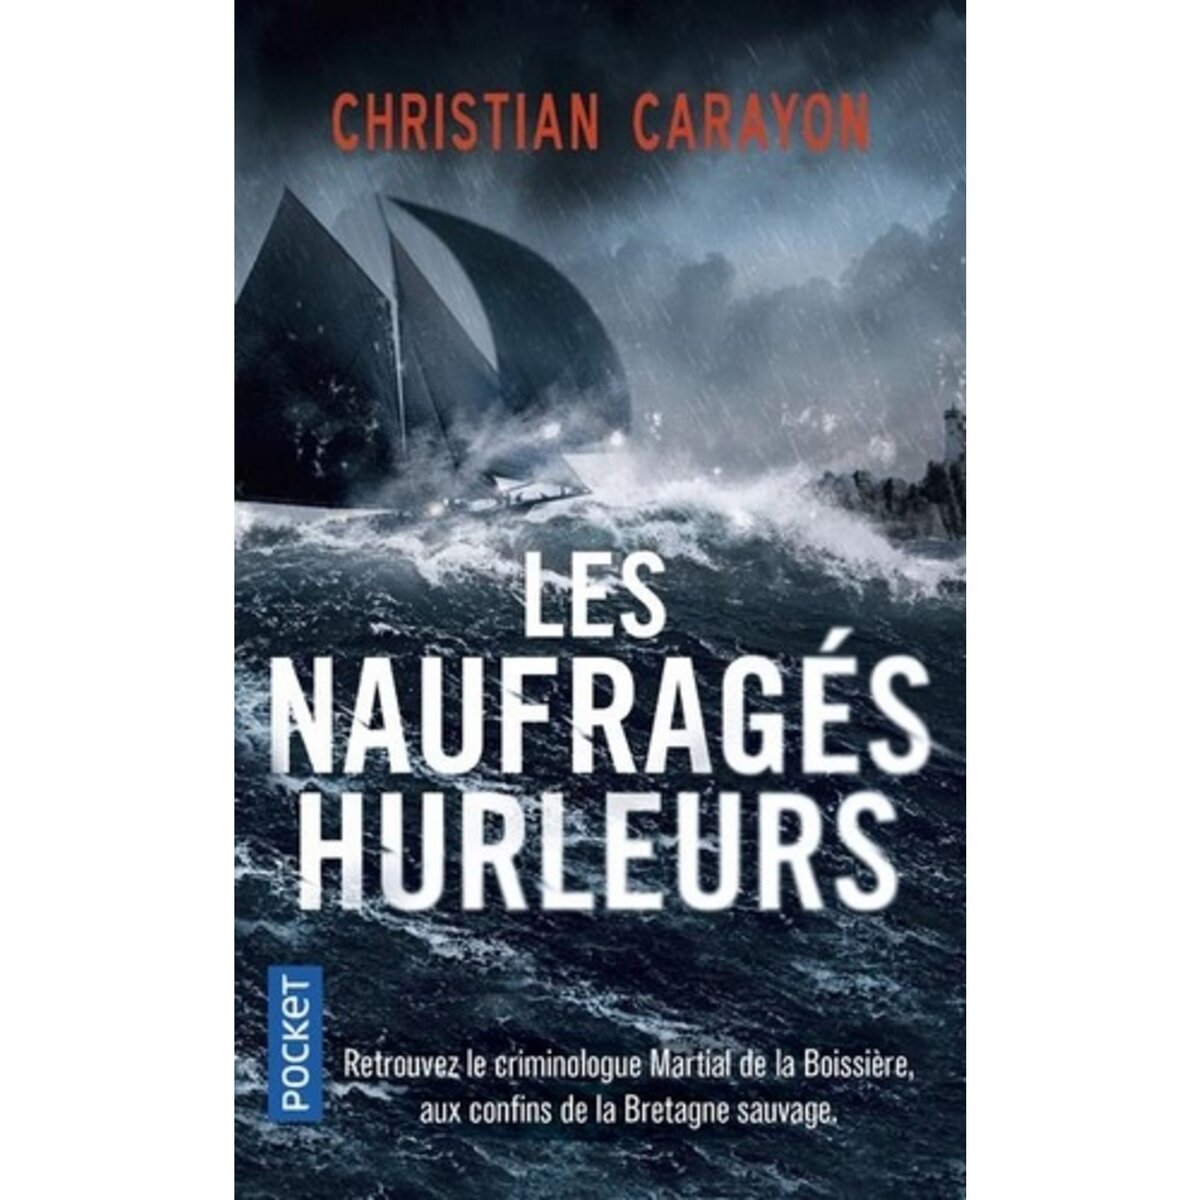  LES NAUFRAGES HURLEURS, Carayon Christian